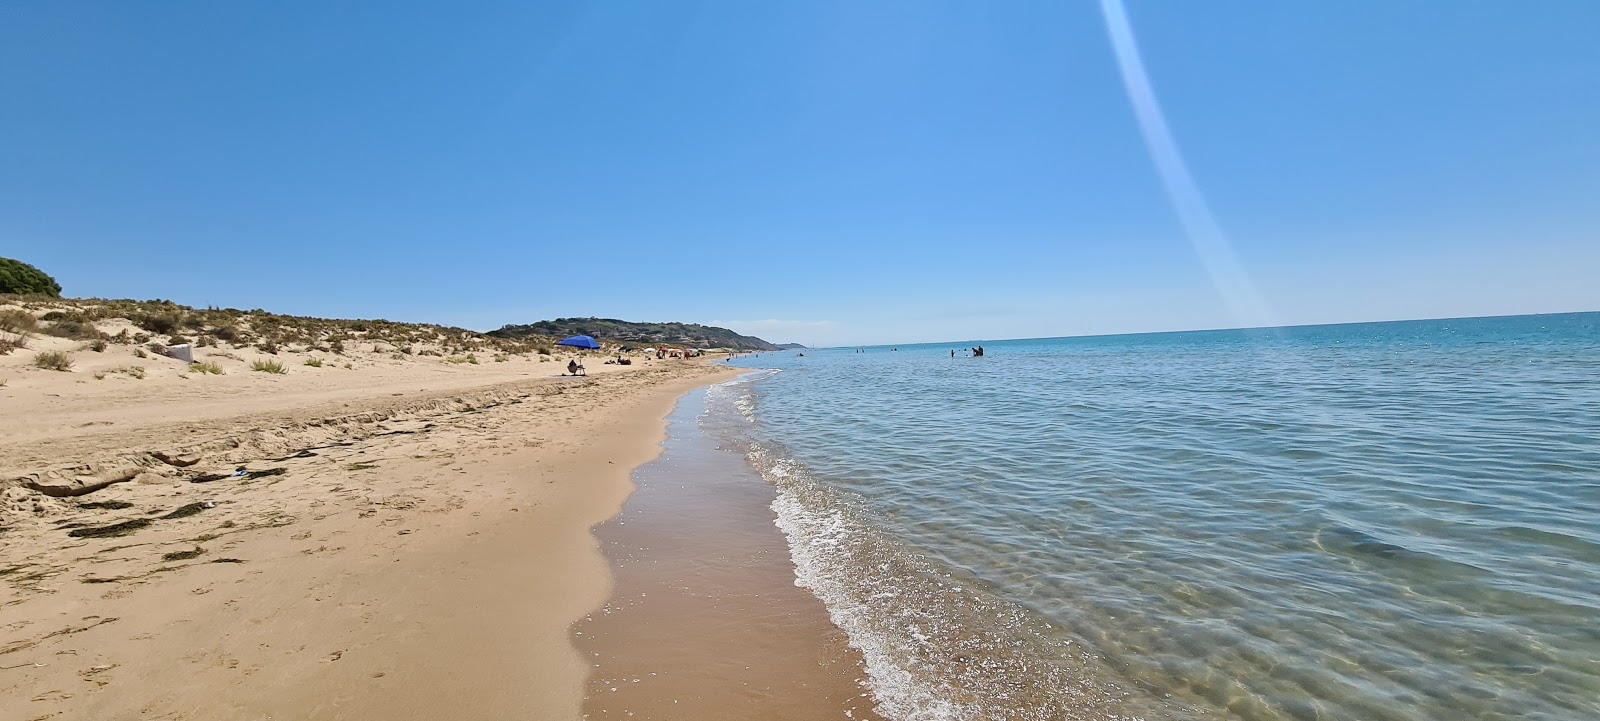 Foto von Spiaggia Roccazzelle mit heller feiner sand Oberfläche